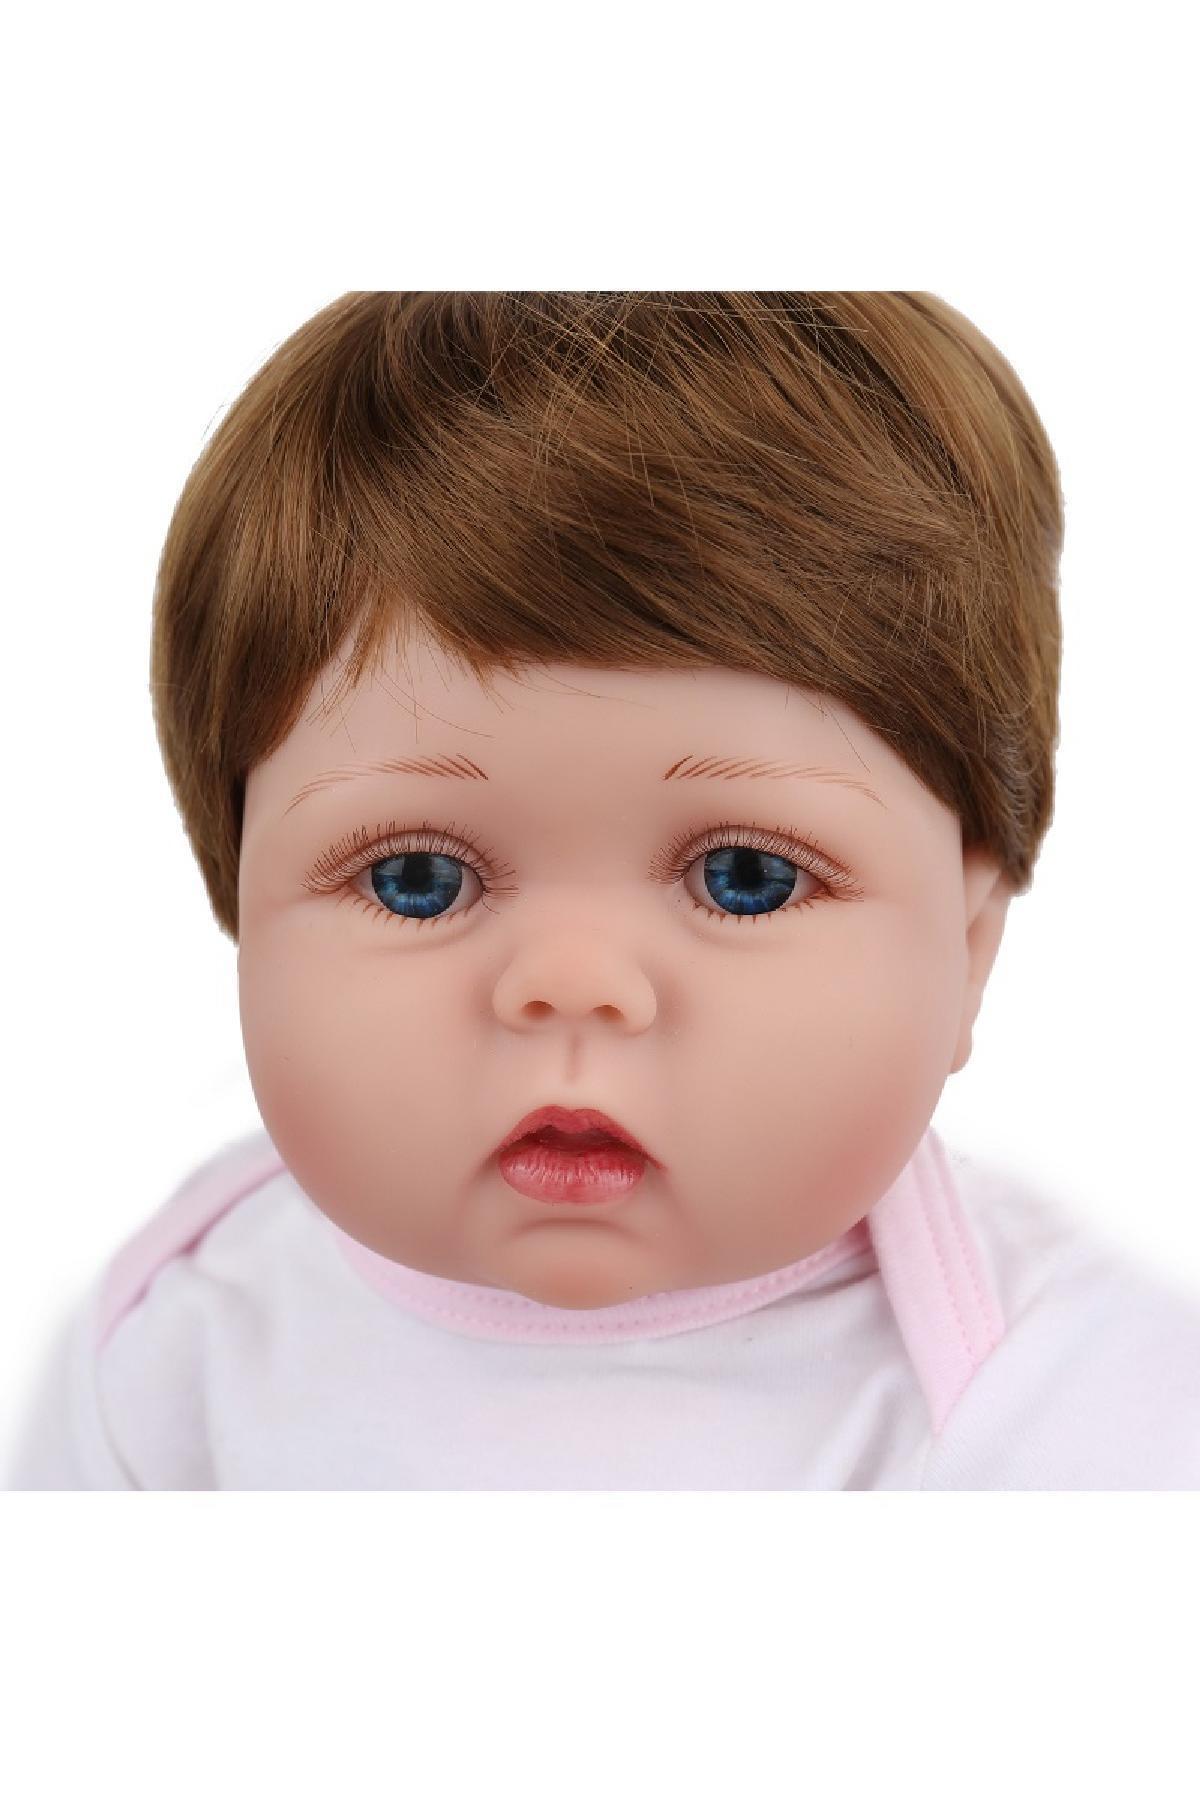 عروسک نوزاد سیلیکونی 55 سانتی متری کد.1045